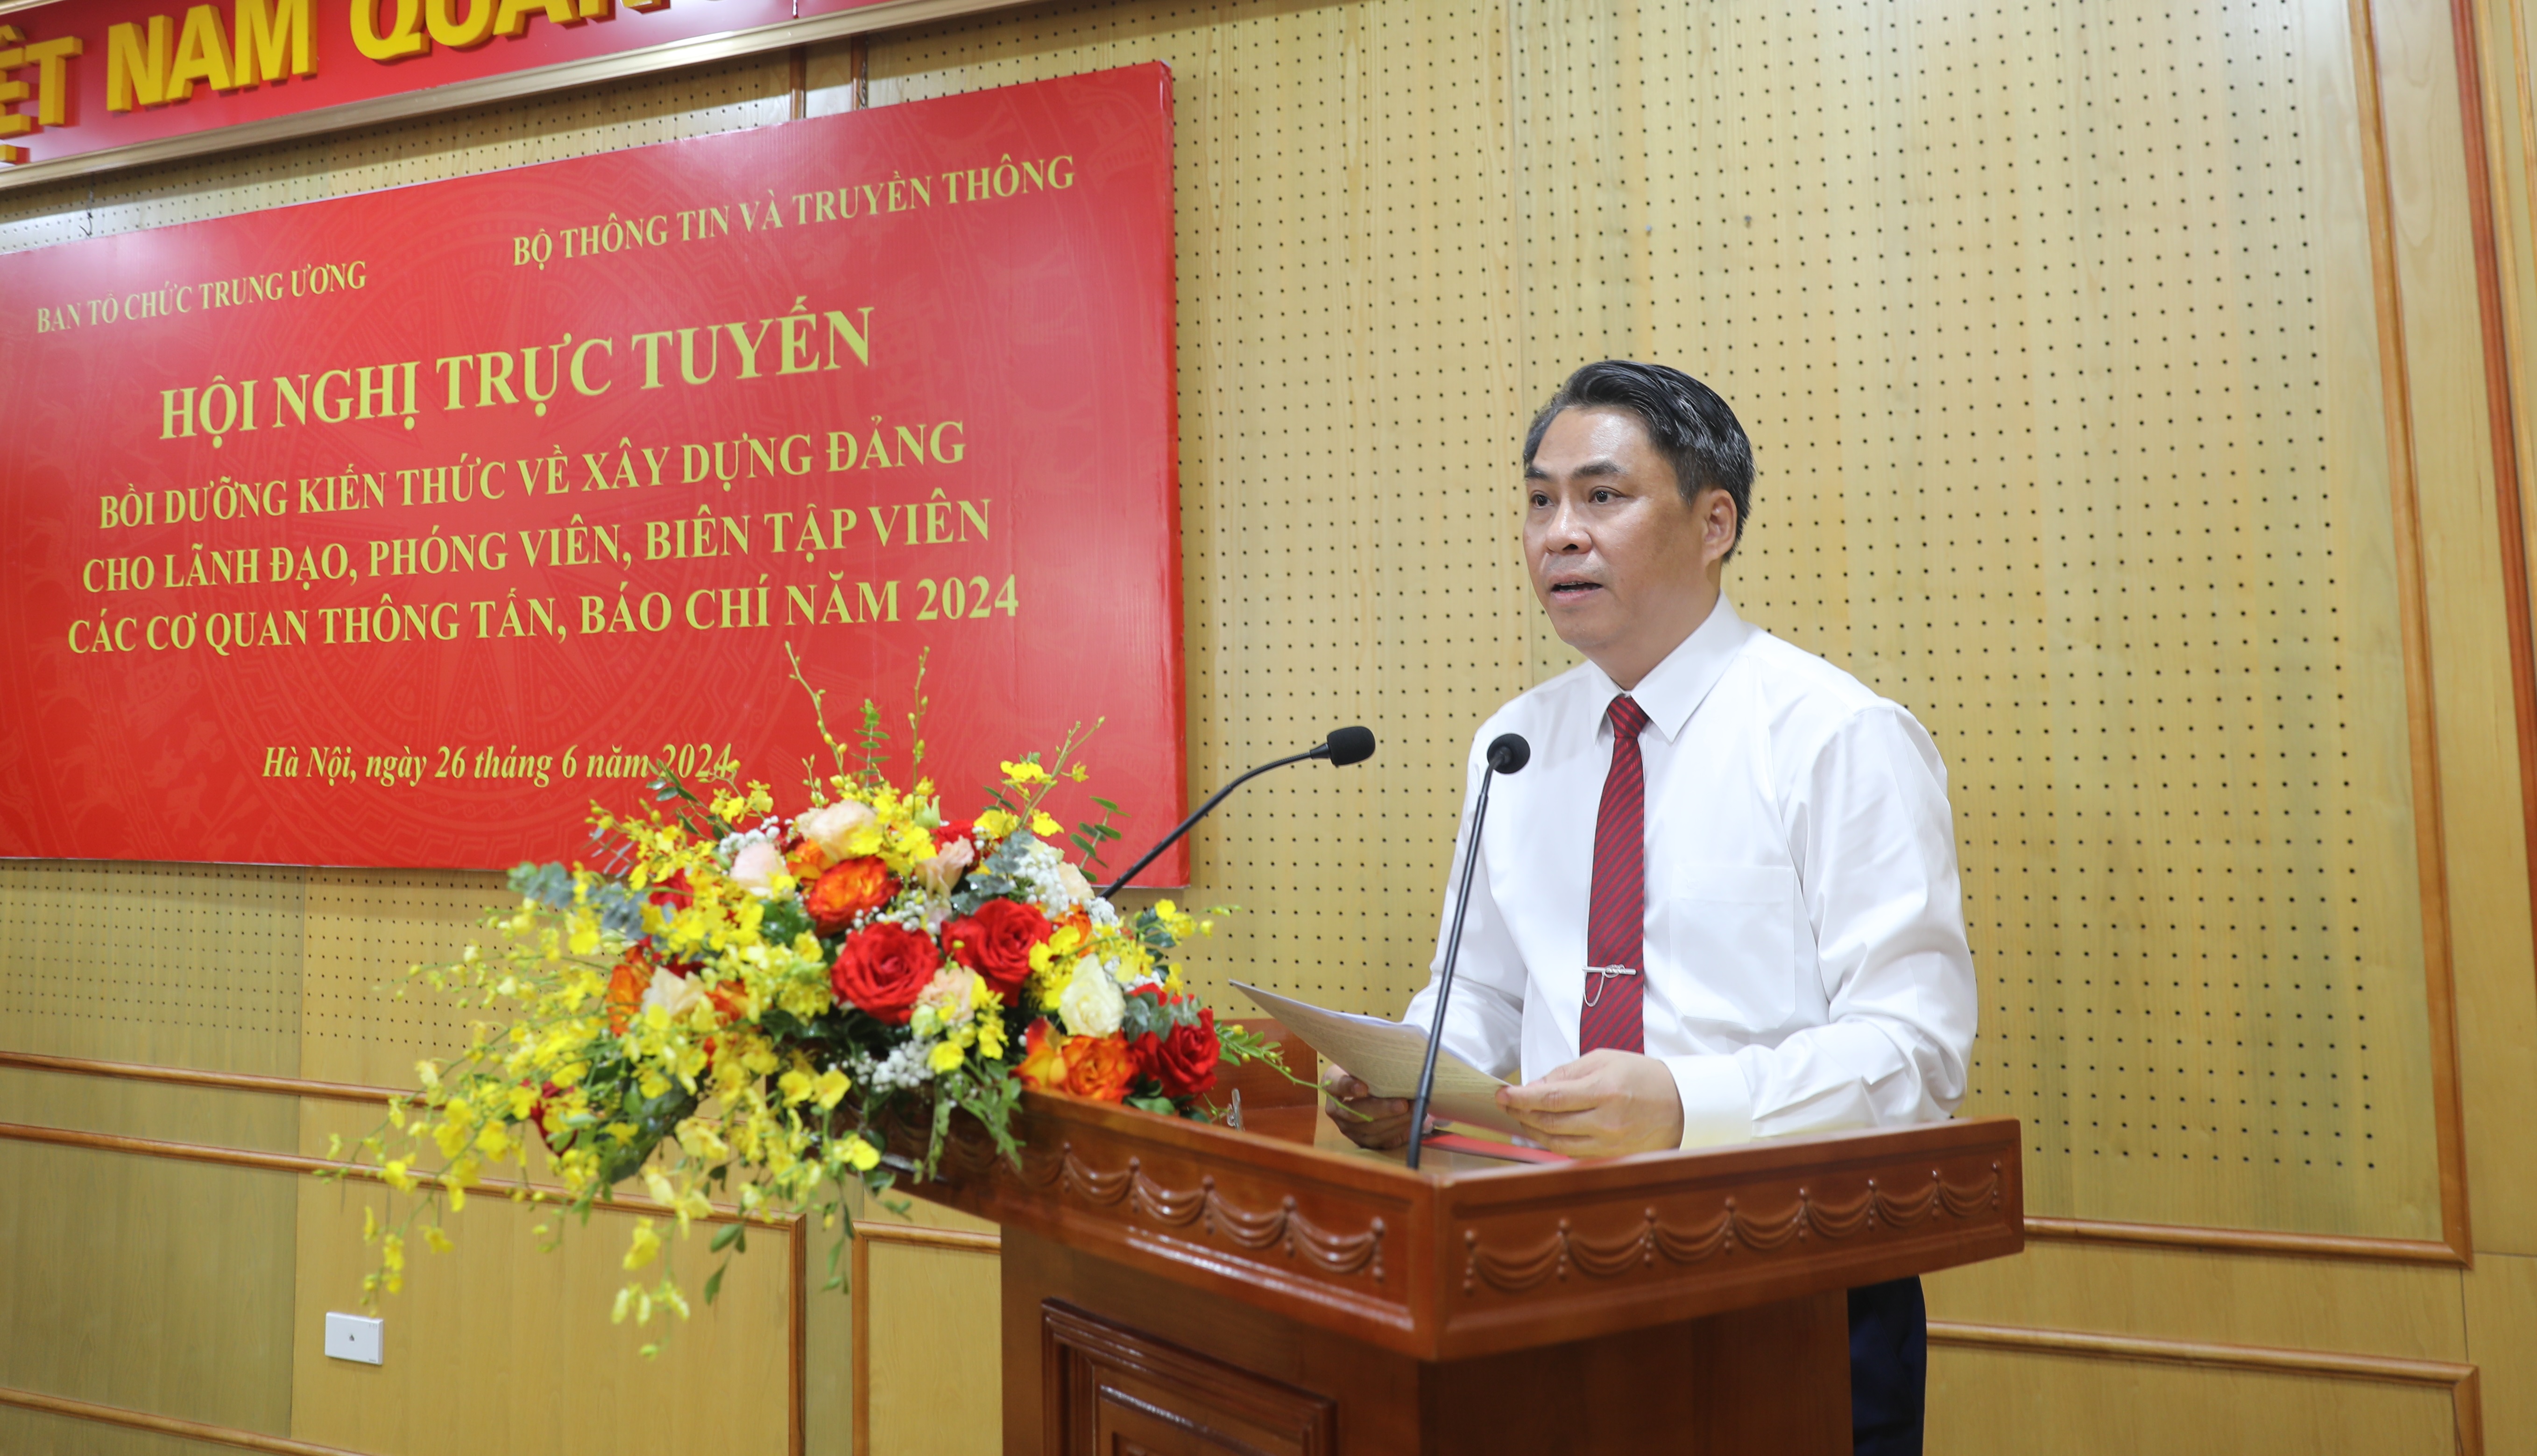 Phó Trưởng Ban Tổ chức Trung ương Phan Thăng An phát biểu khai mạc Hội nghị.